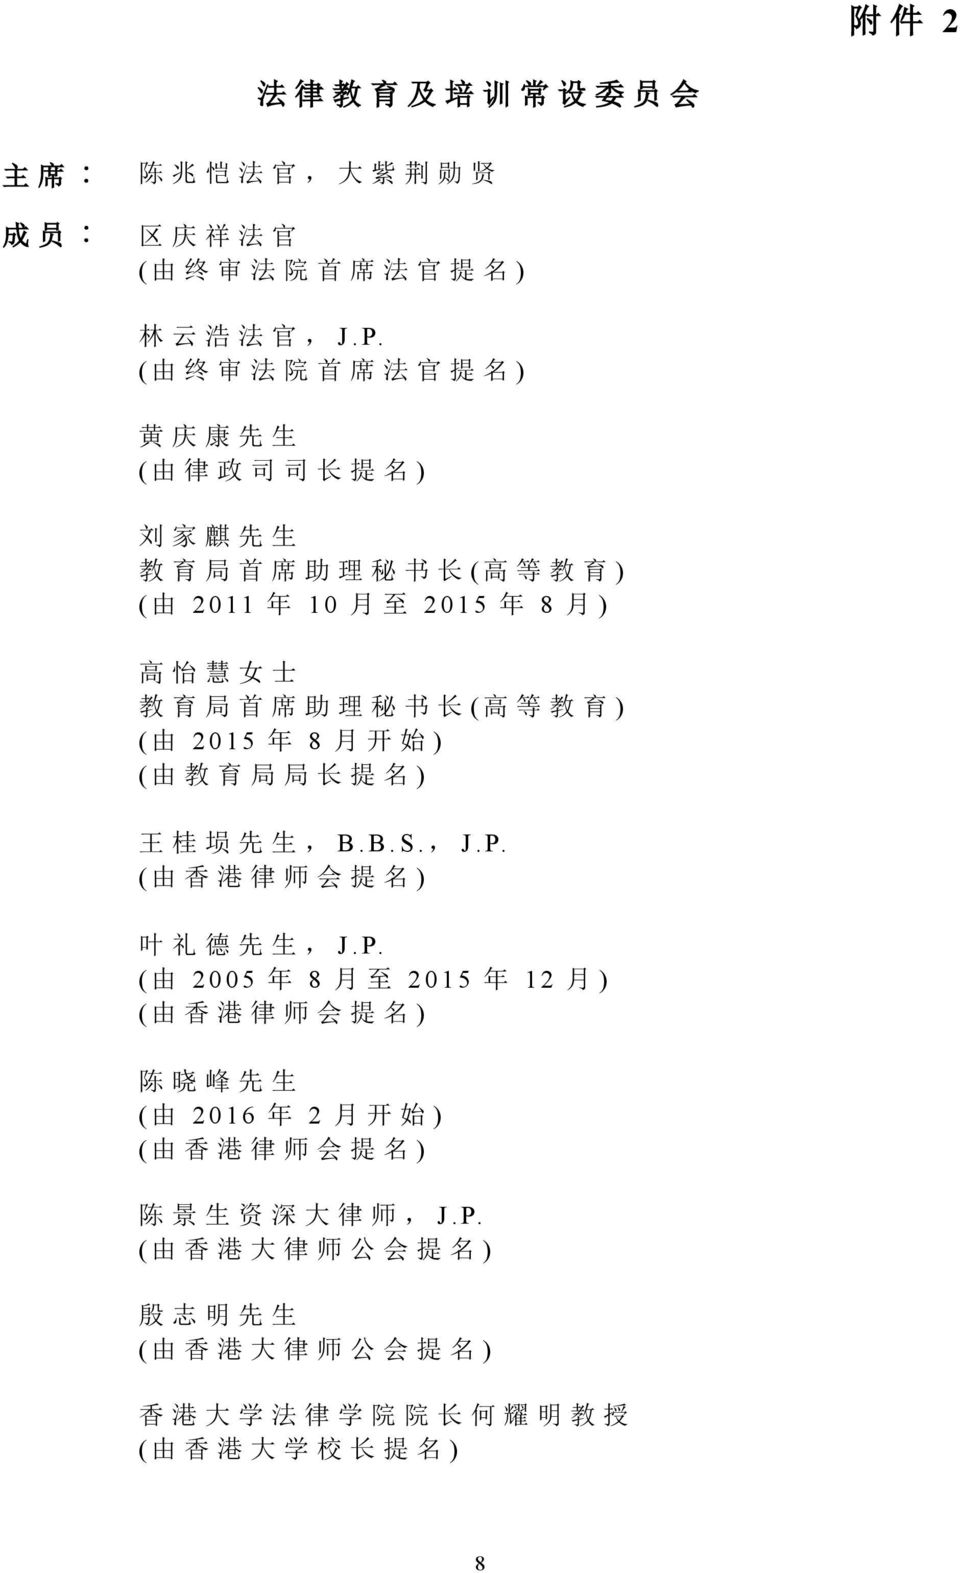 书 长 ( 高 等 教 育 ) ( 由 2015 年 8 月 开 始 ) ( 由 教 育 局 局 长 提 名 ) 王 桂 埙 先 生,B. B. S., J. P.